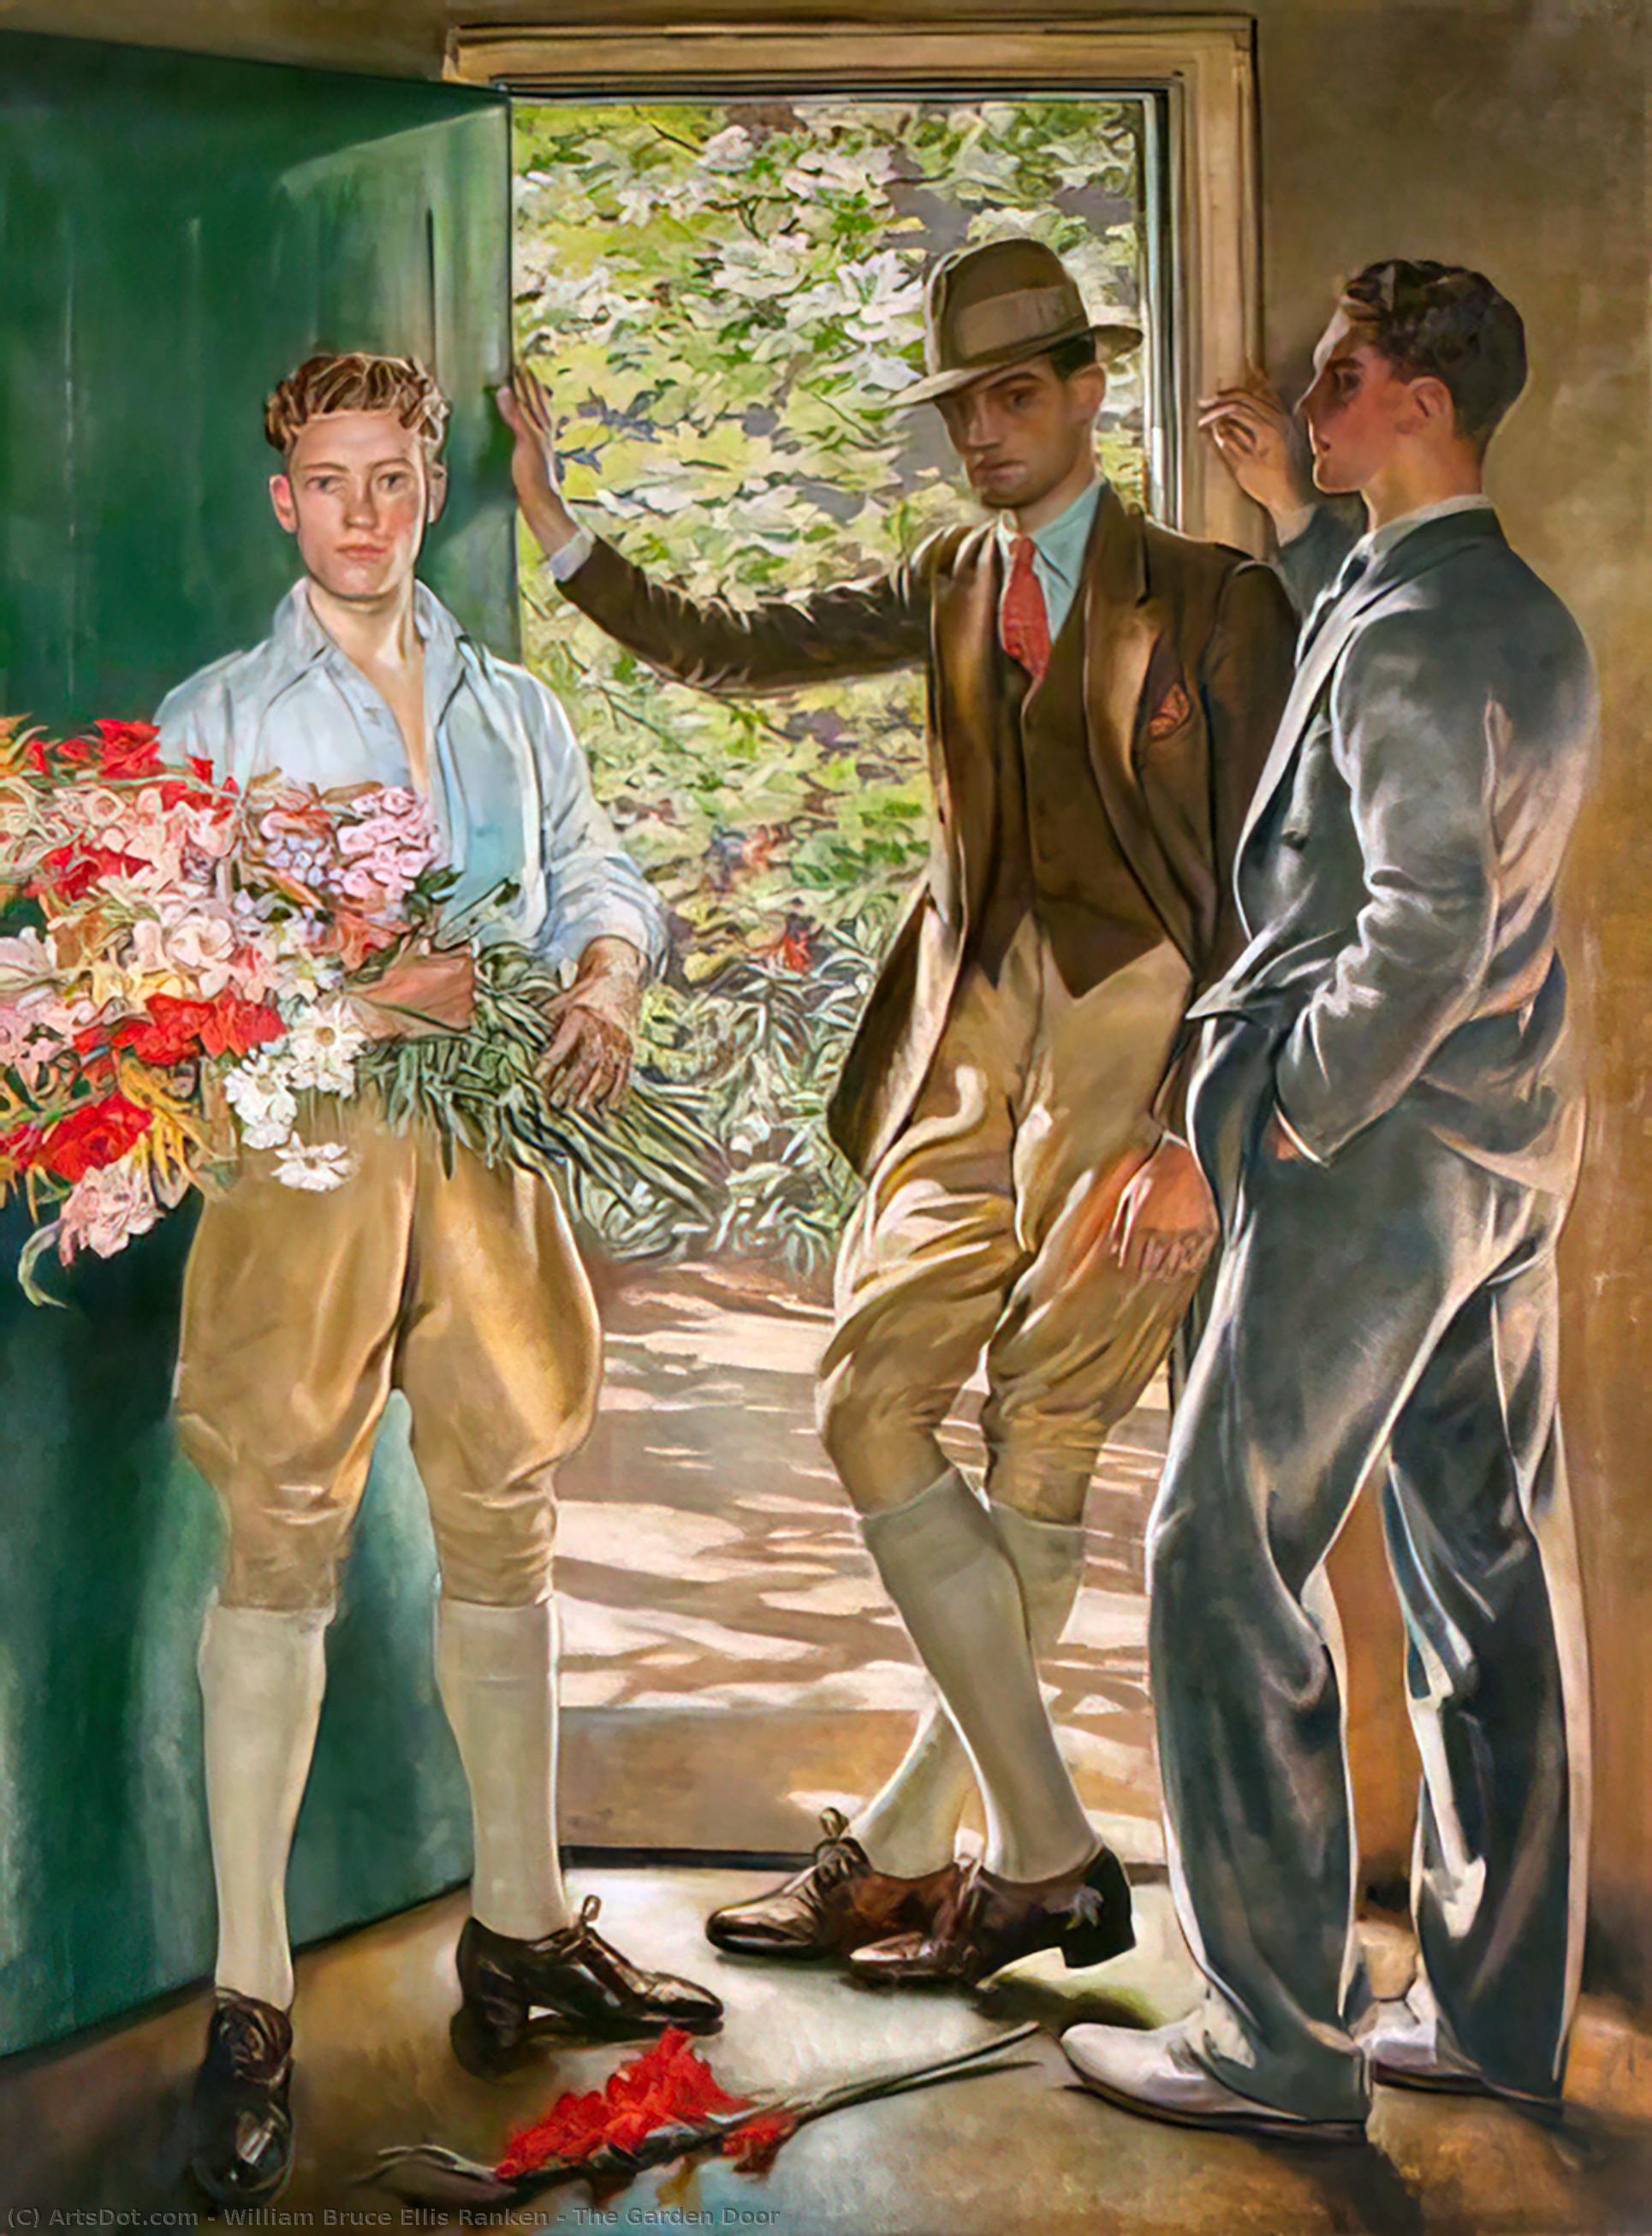 Achat Reproductions De Qualité Musée La porte du jardin, 1926 de William Bruce Ellis Ranken (1881-1941) | ArtsDot.com